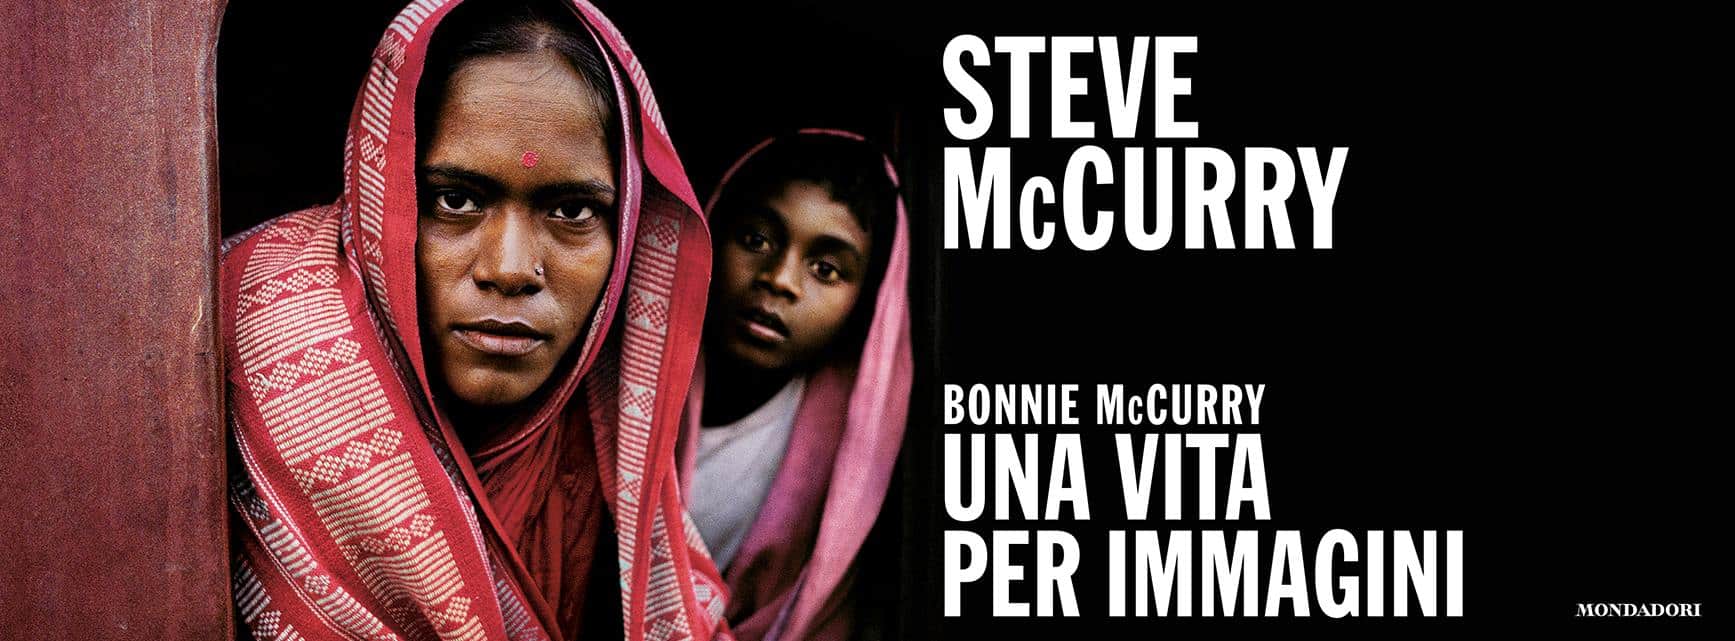 Steve McCurry Milano una vita per immagini